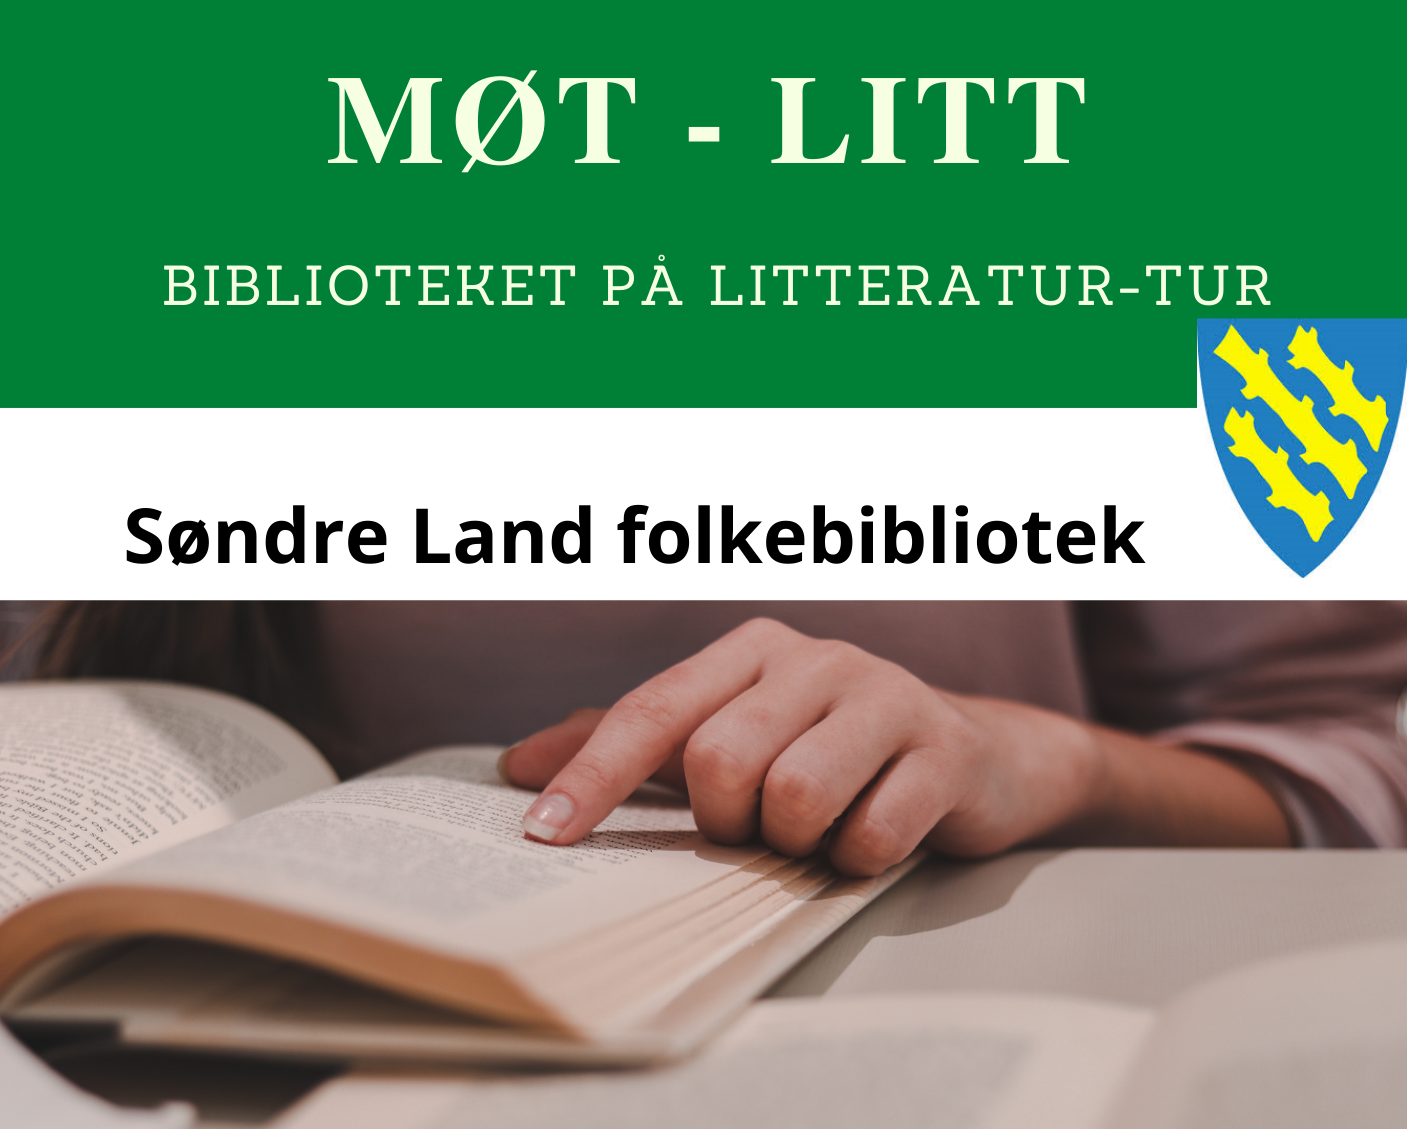 Møt Litt Logo Biblioteket på litteratur-tur